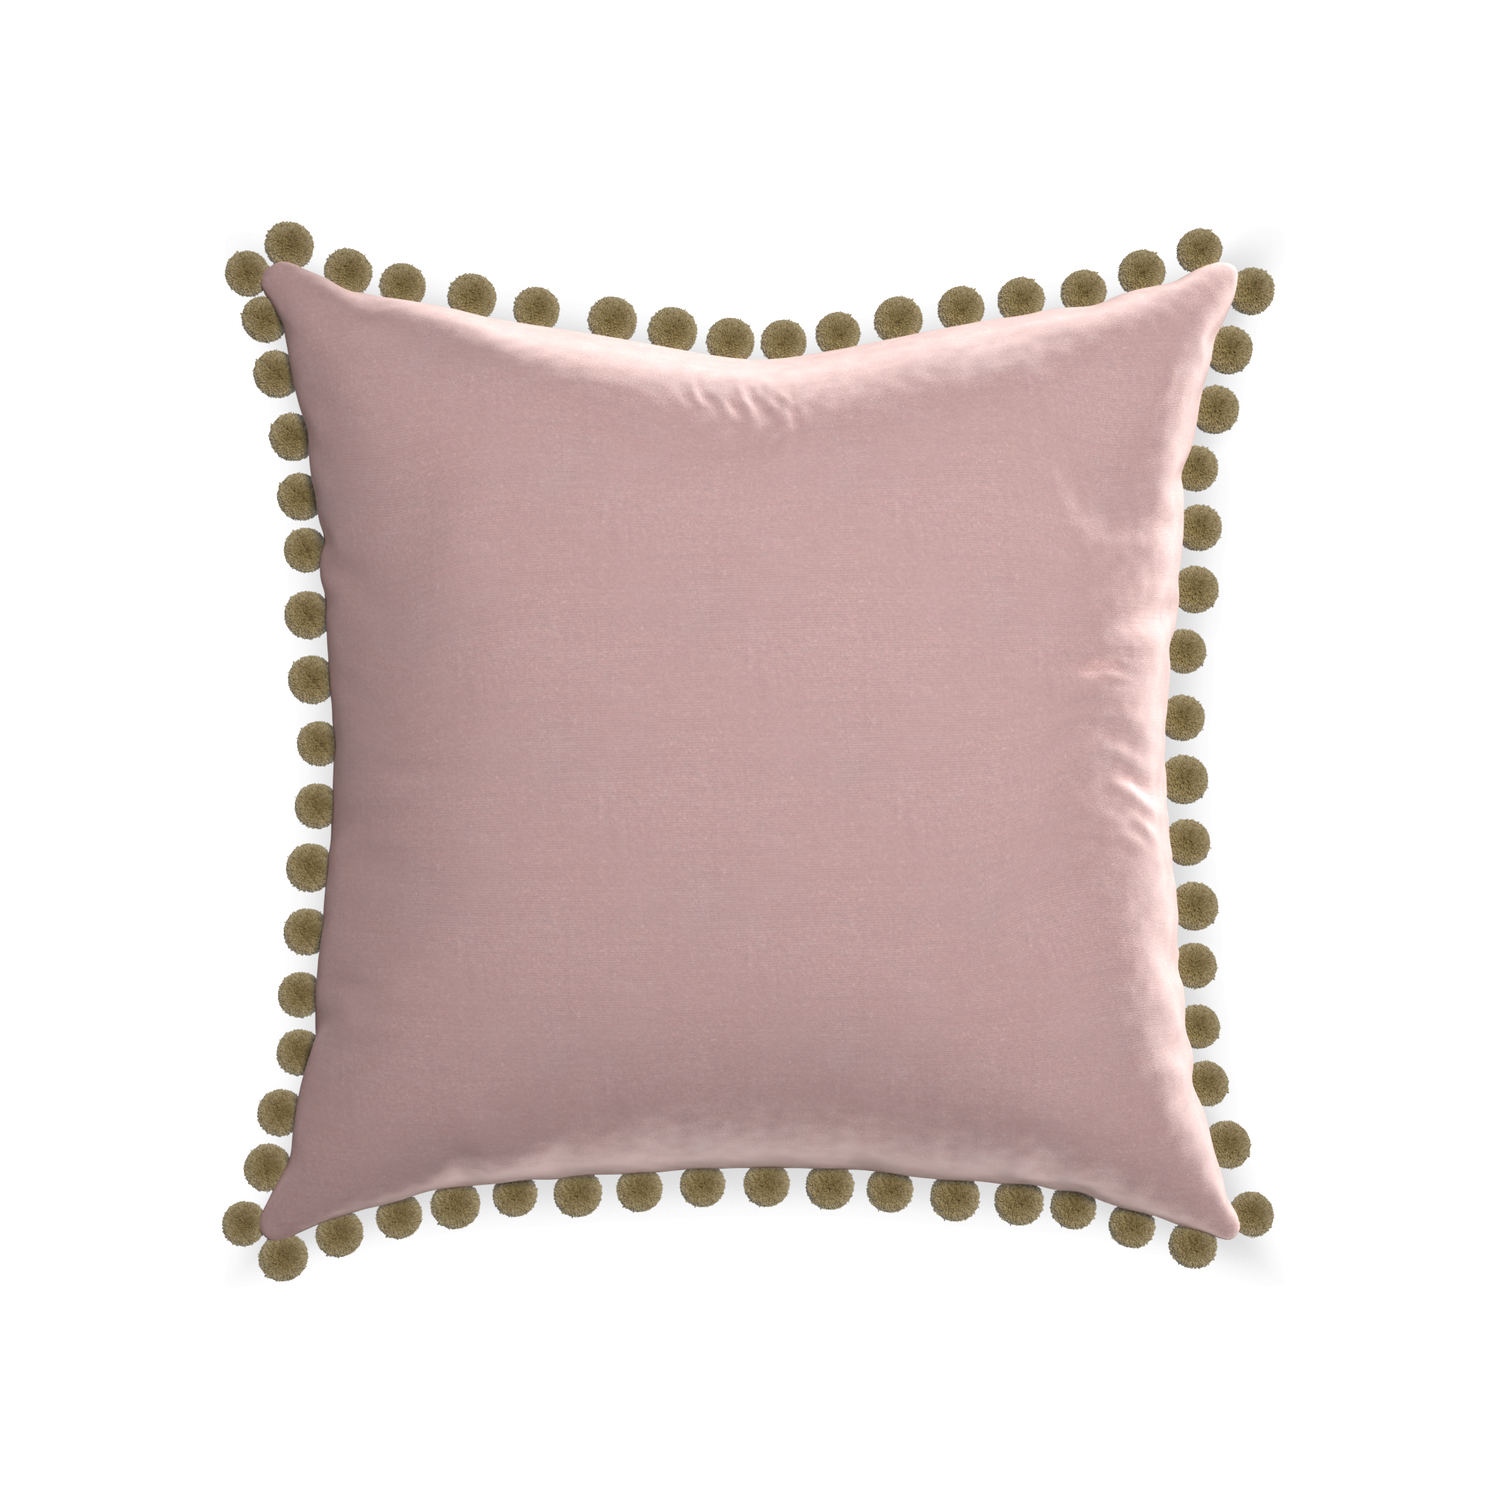 square mauve velvet pillow with olive green pom poms